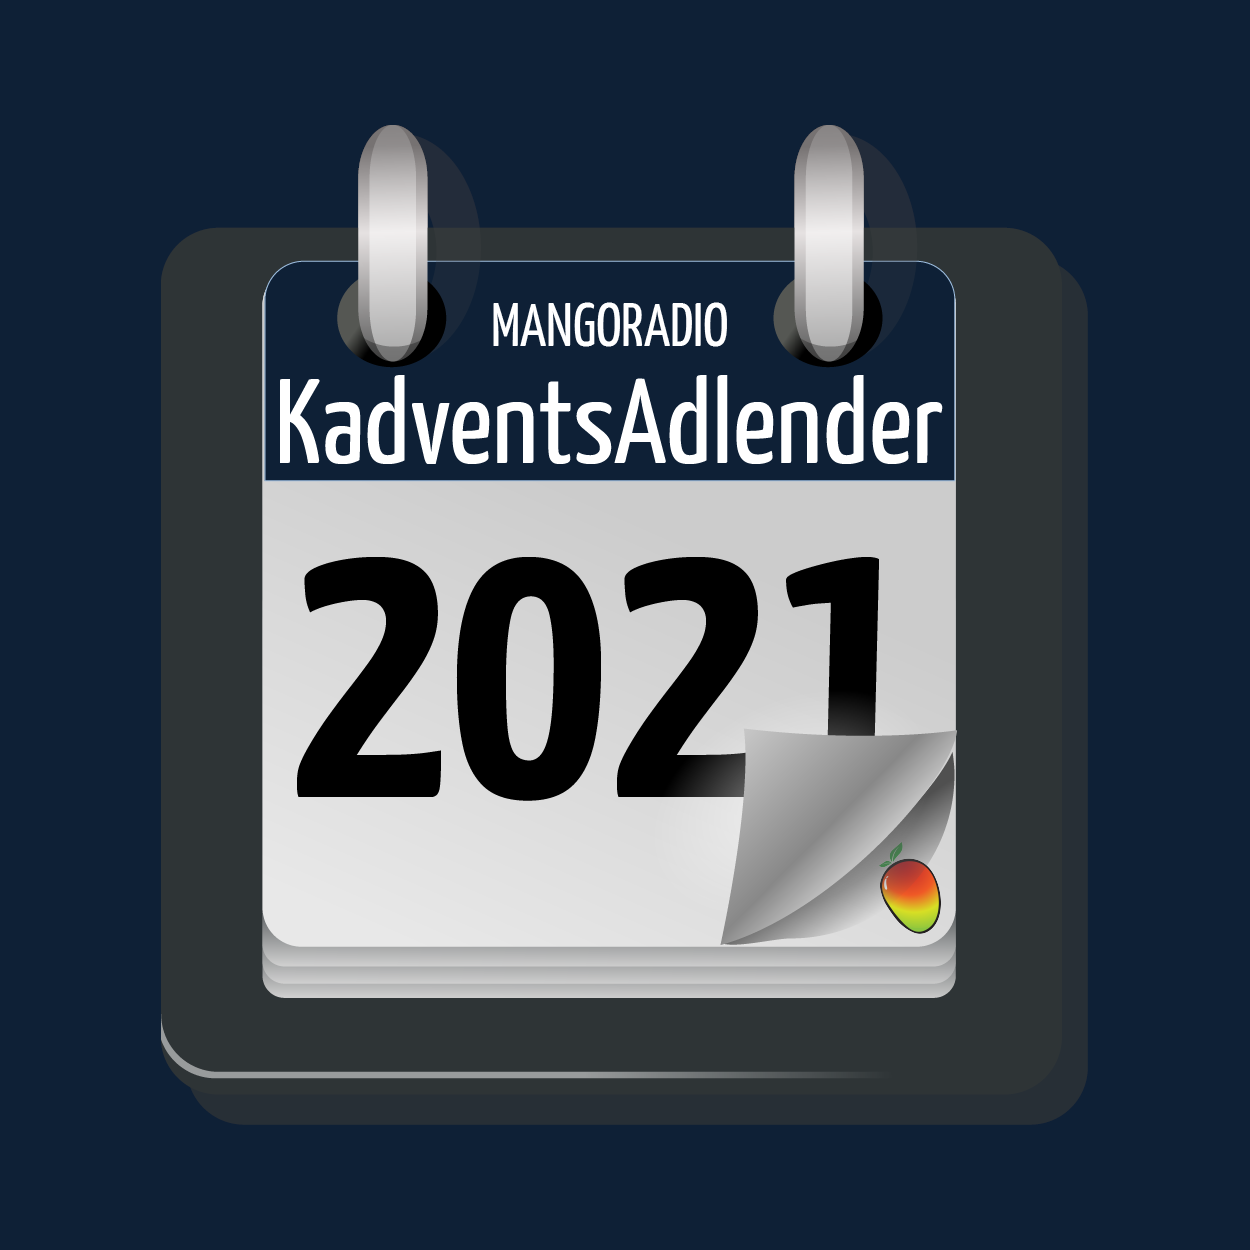 KadventsAdlender 2021